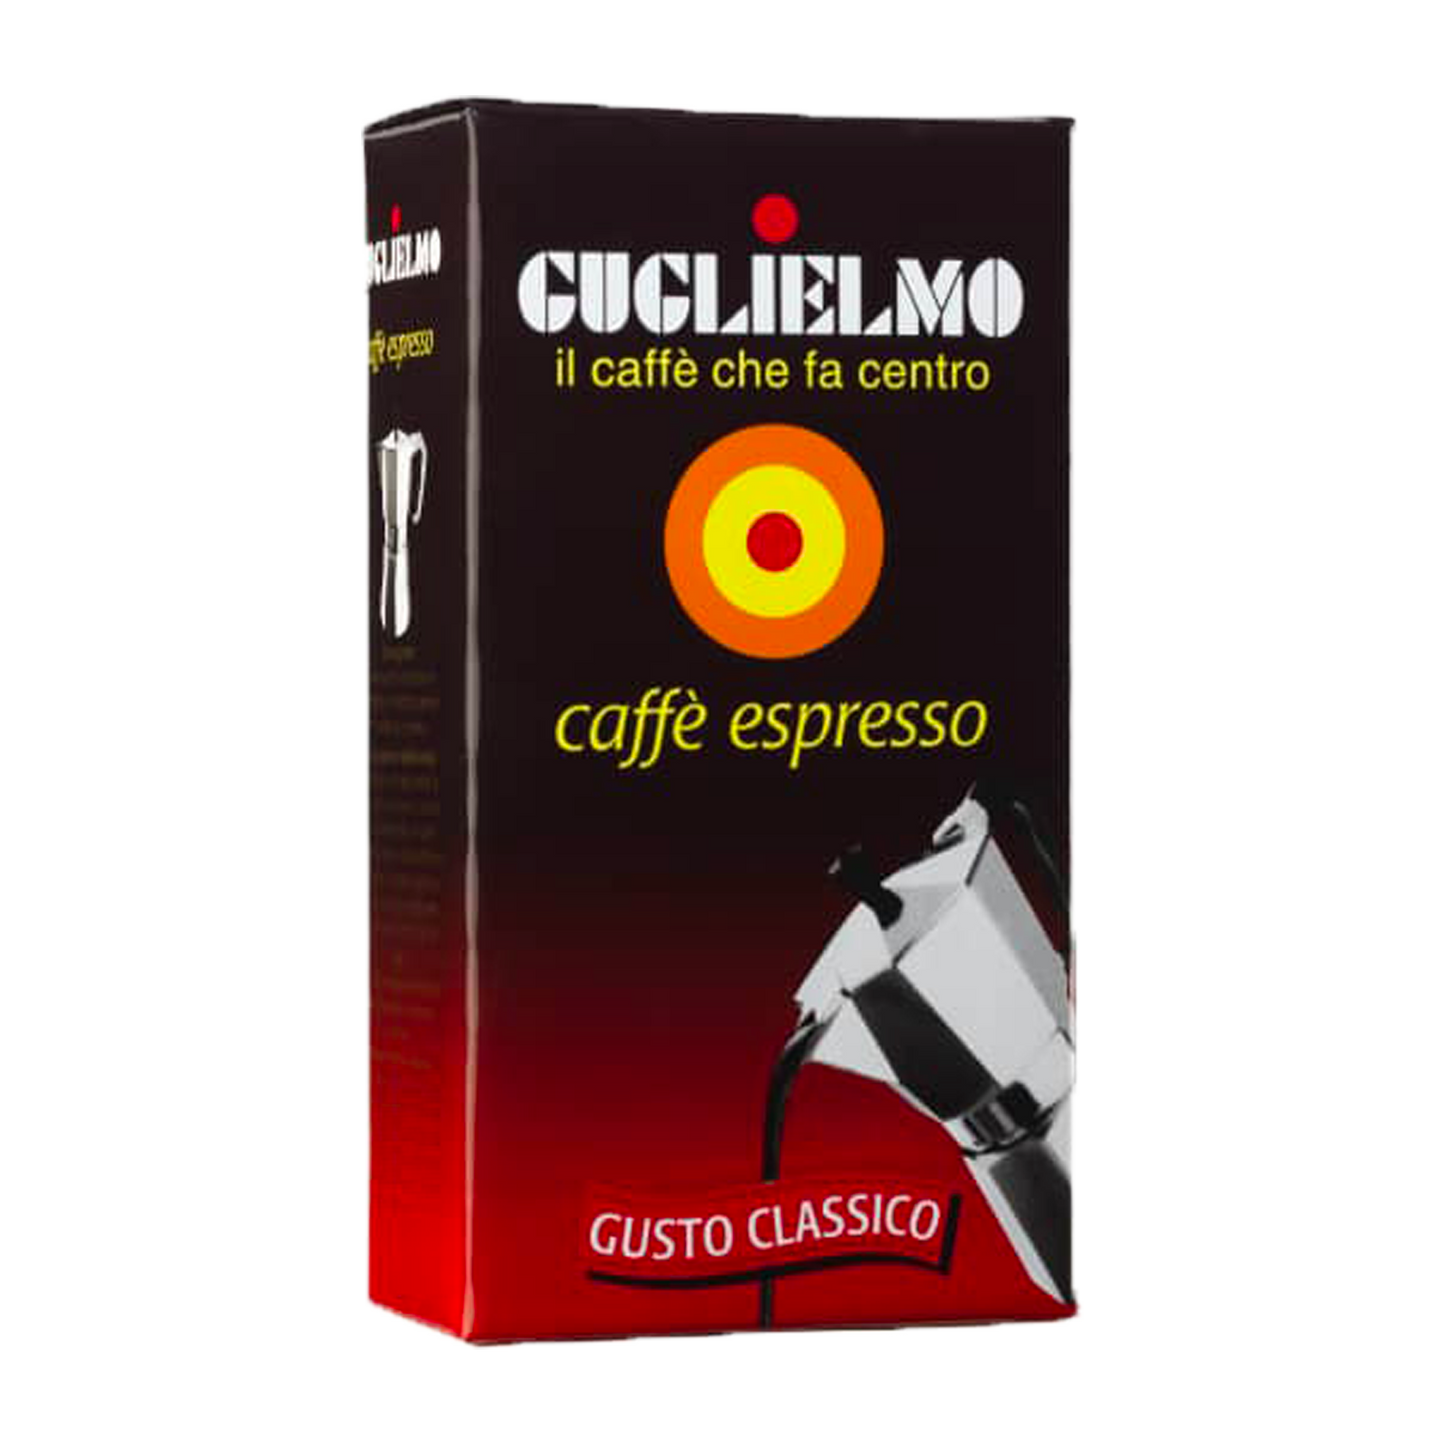 Guglielmo espresso coffee 250g